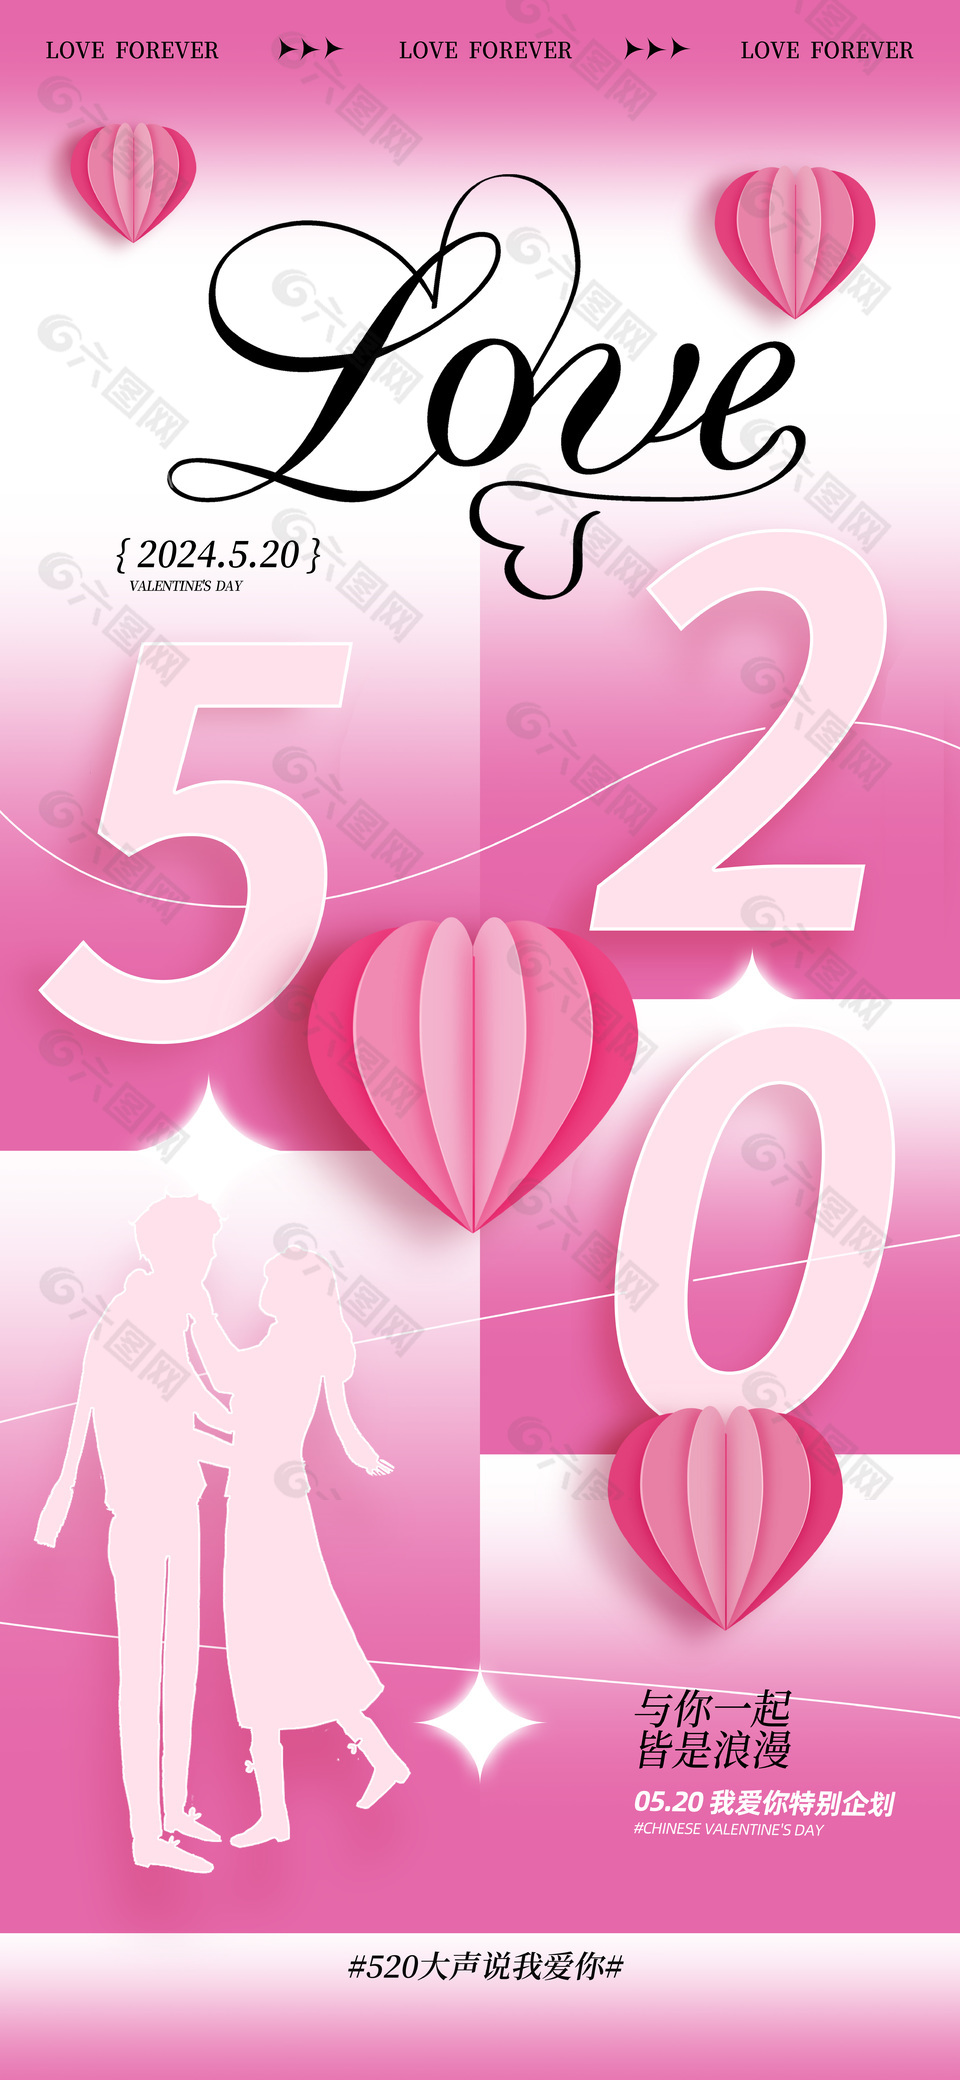 520我爱你特别企划粉色浪漫海报模版